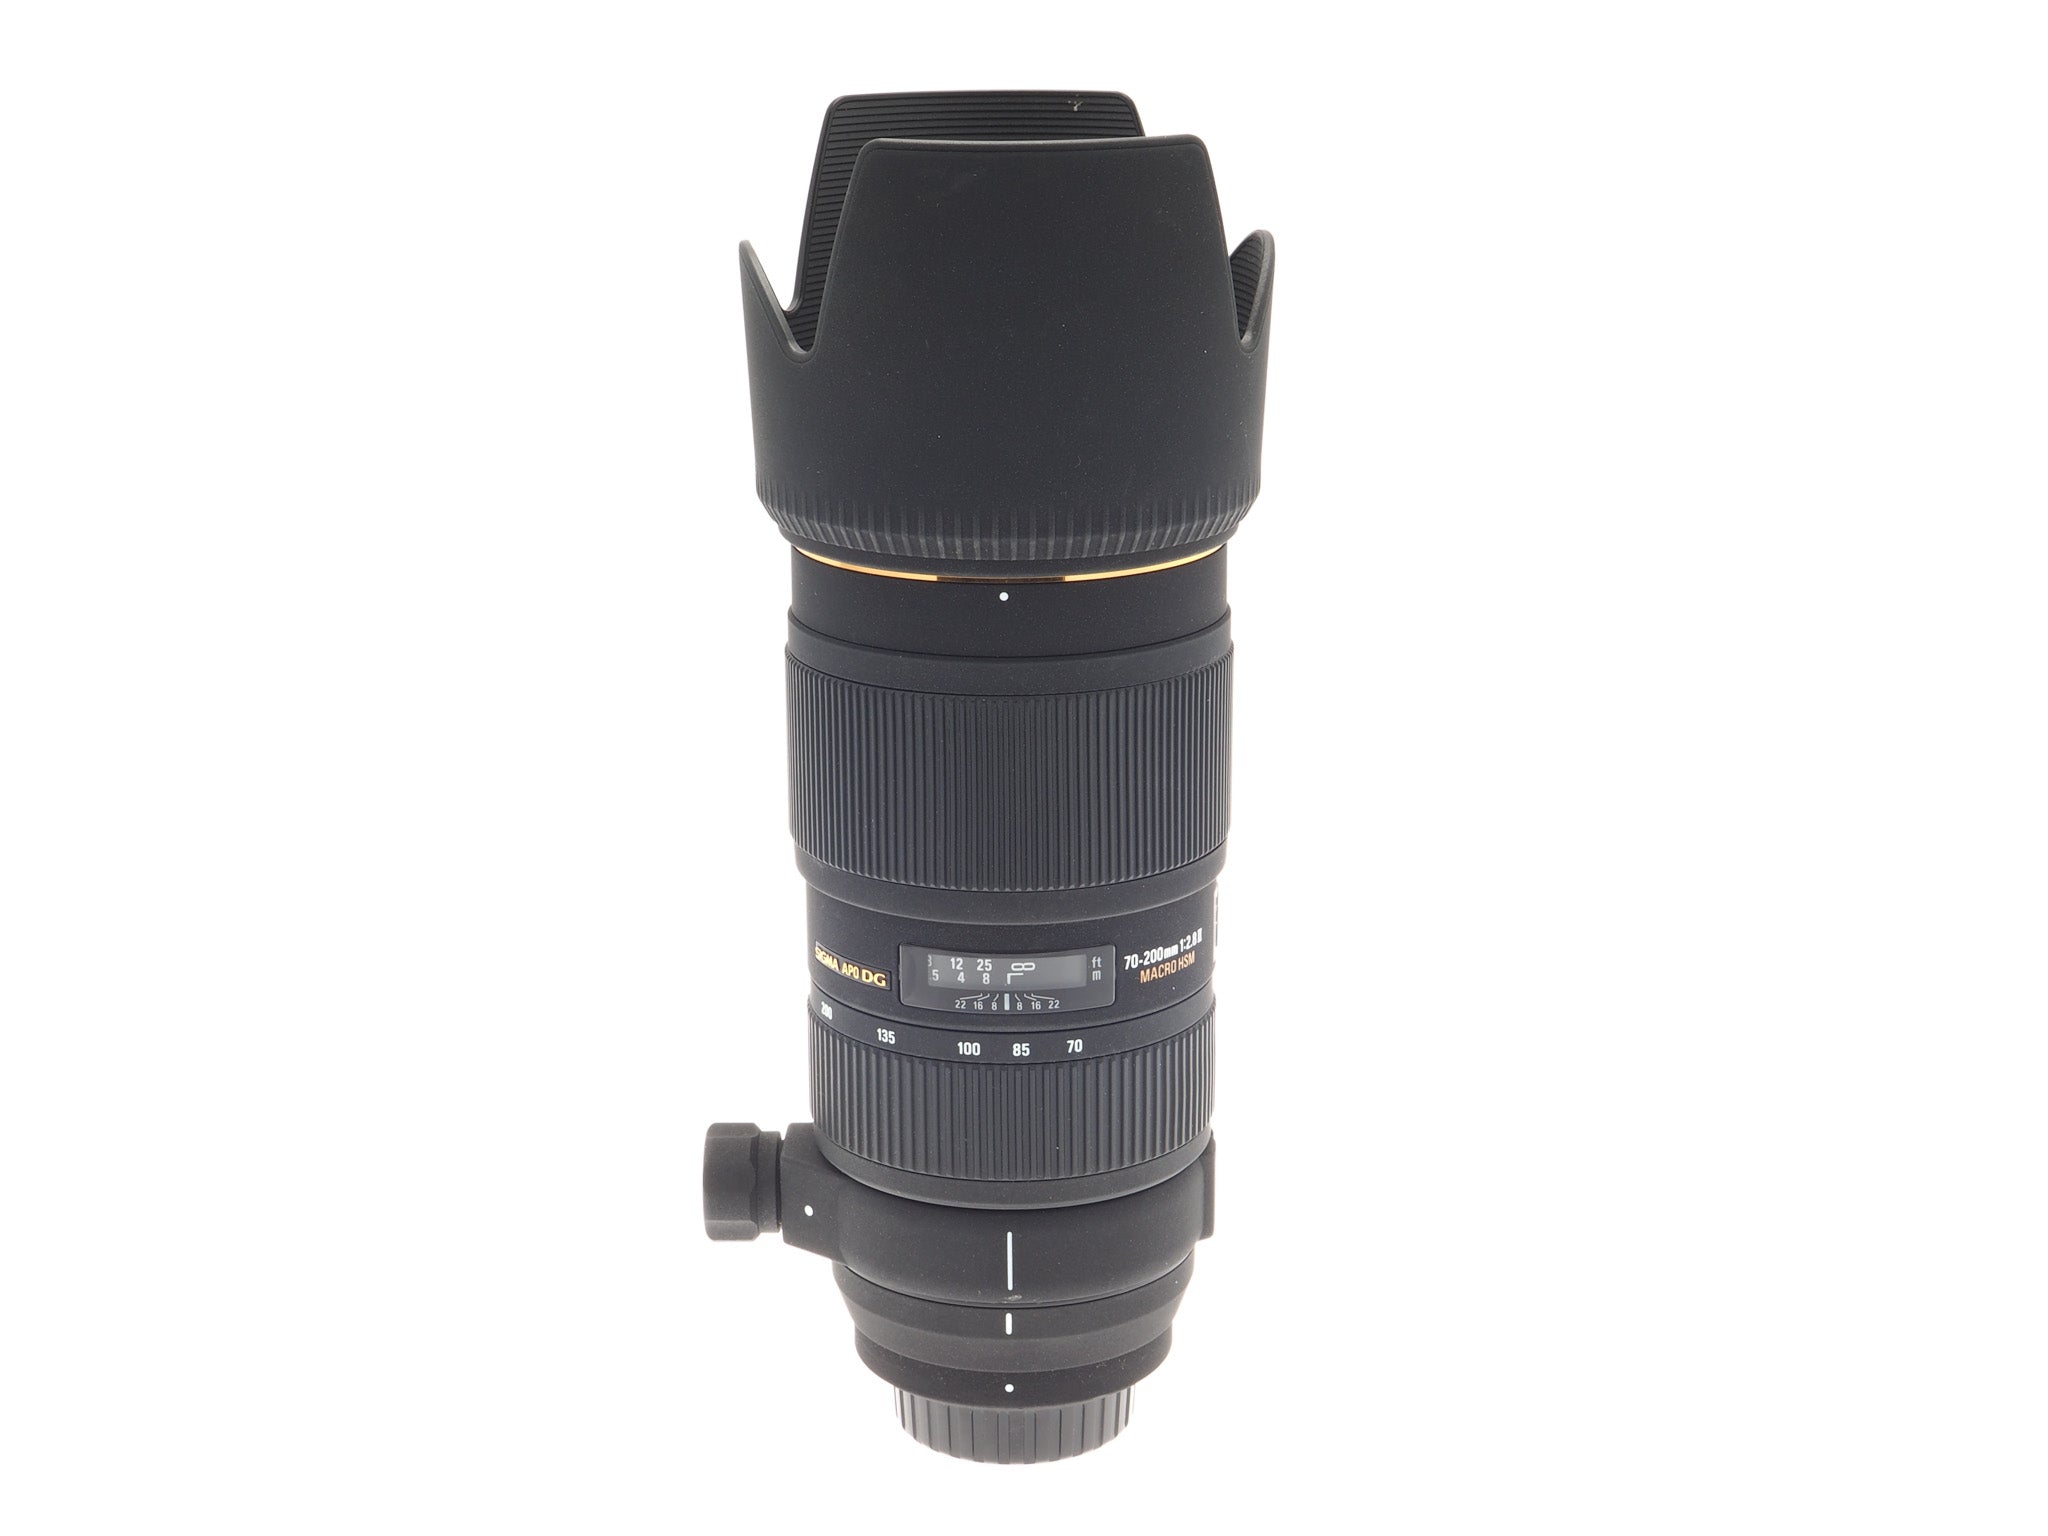 Sigma 70-200mm f2.8 II EX APO DG Macro HSM - Lens